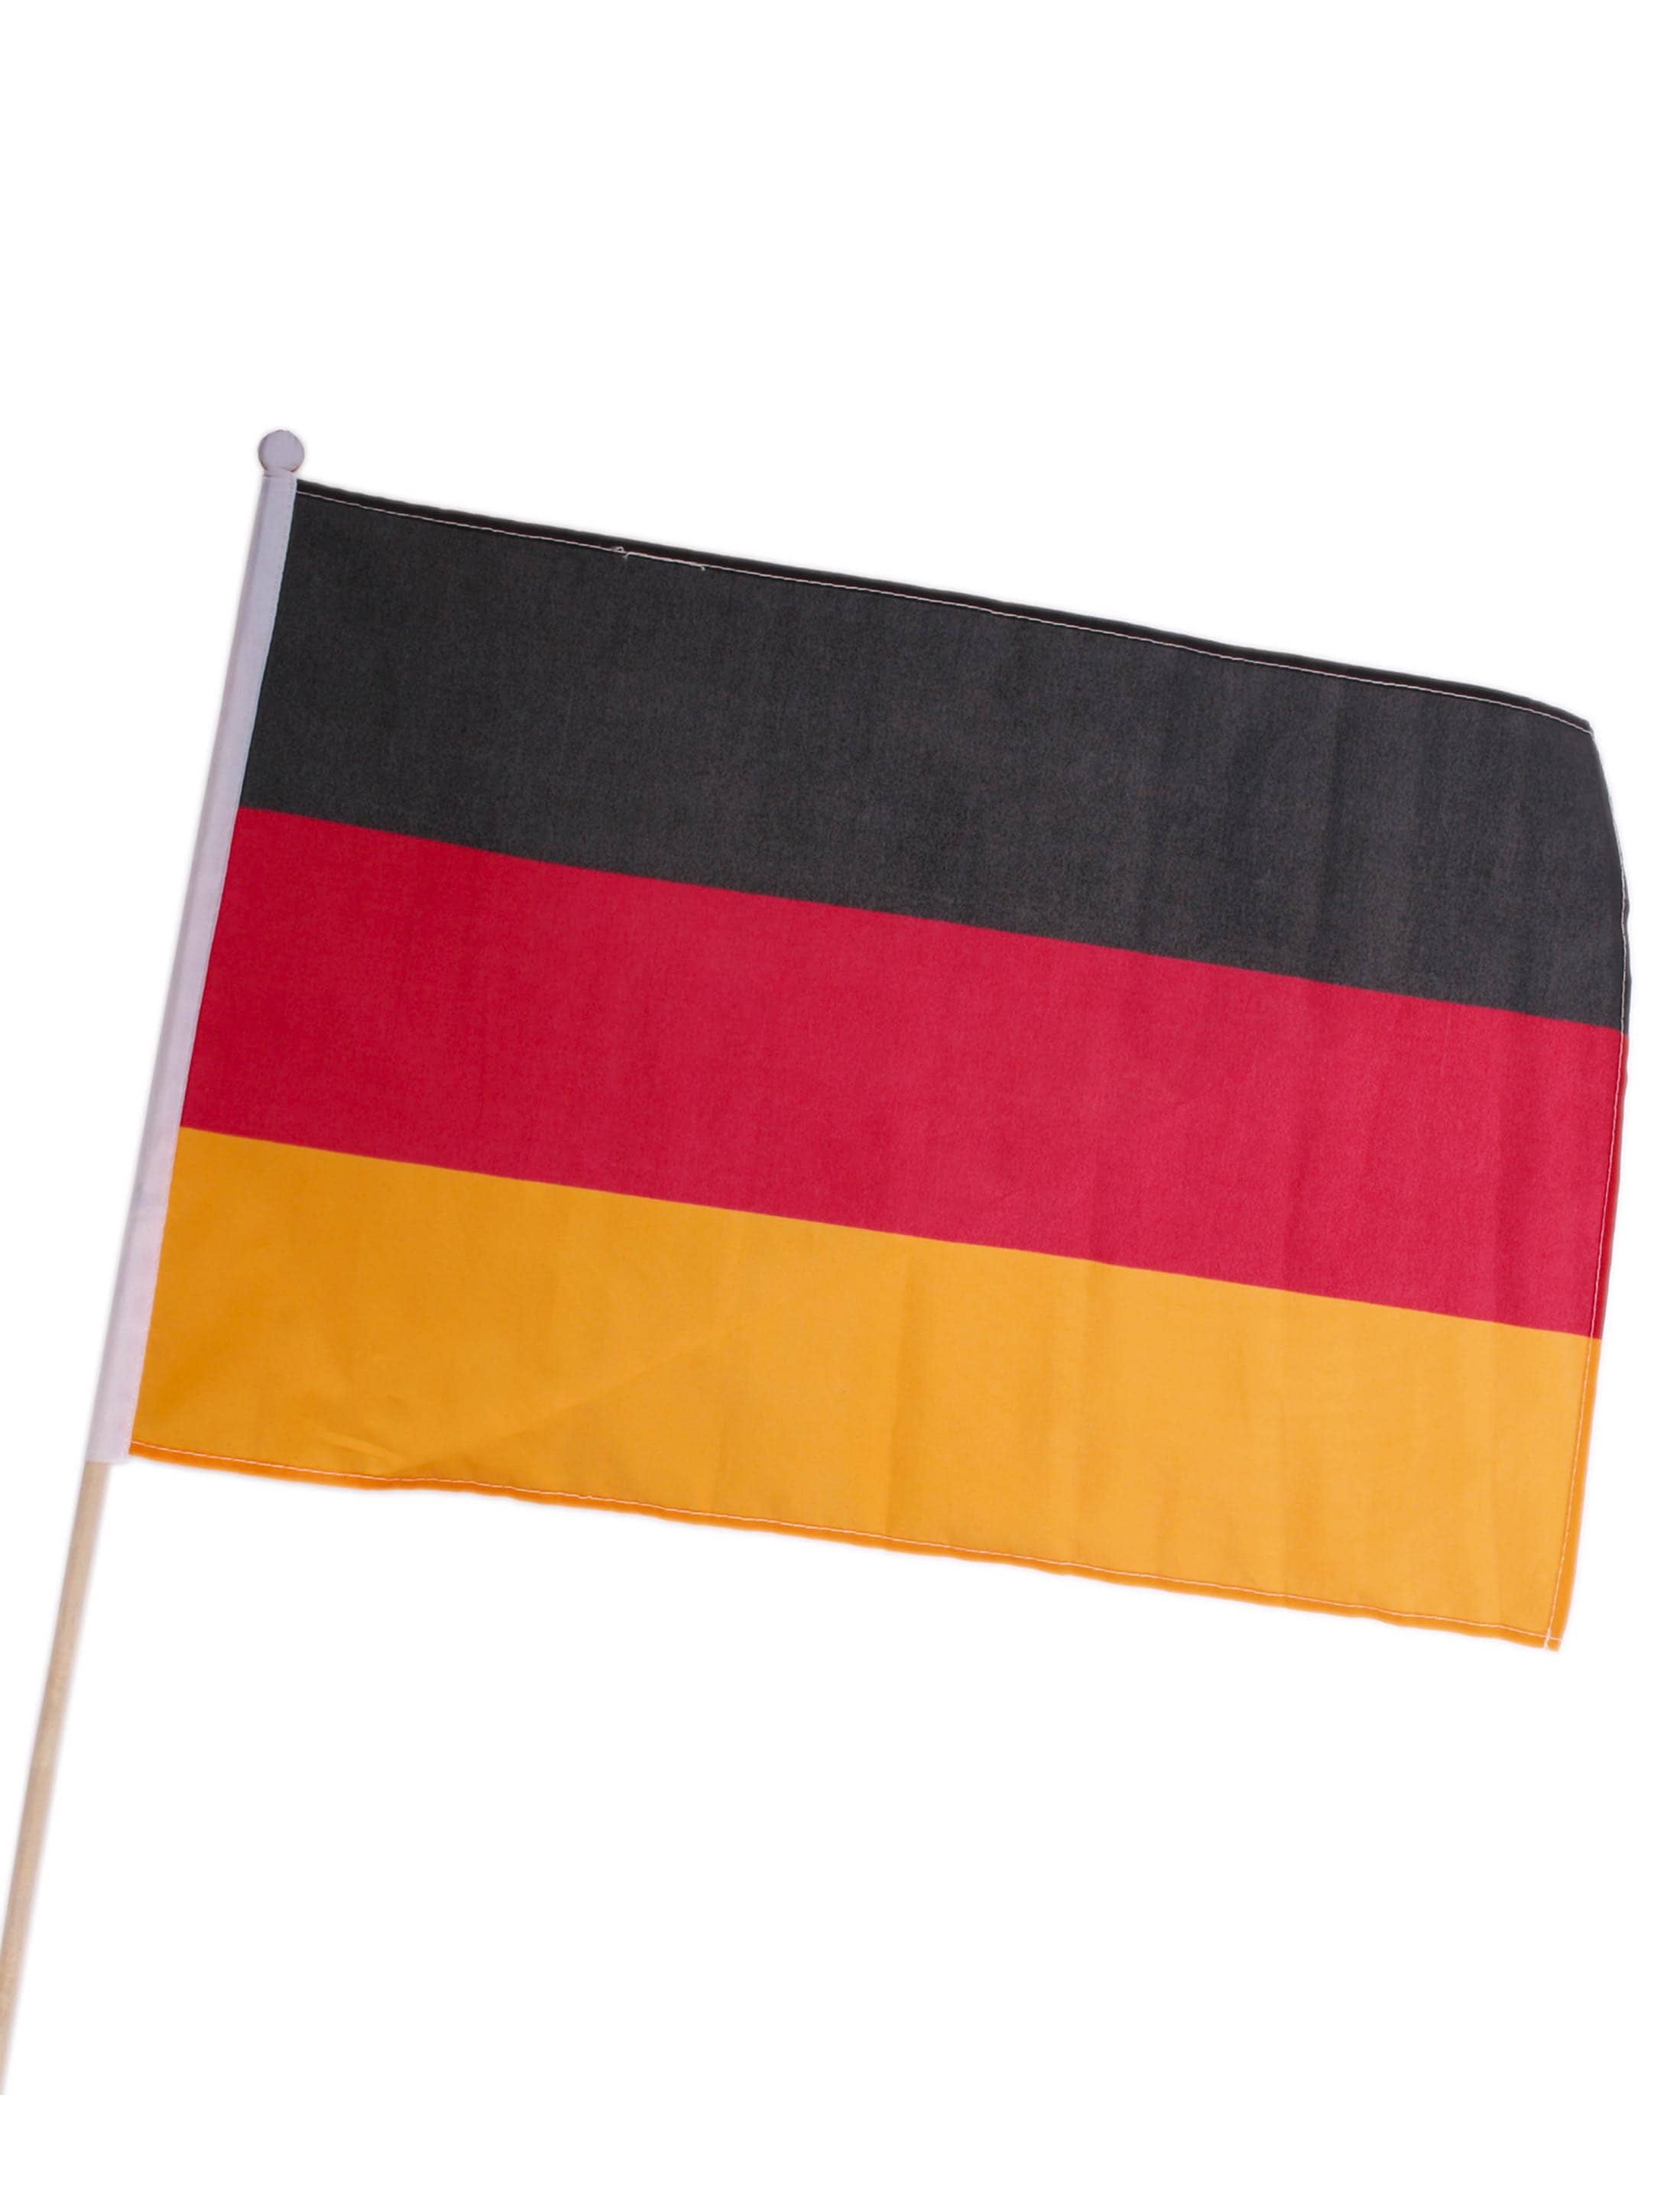 Deutschland Fahne für die WM oder EM kaufen » Deiters